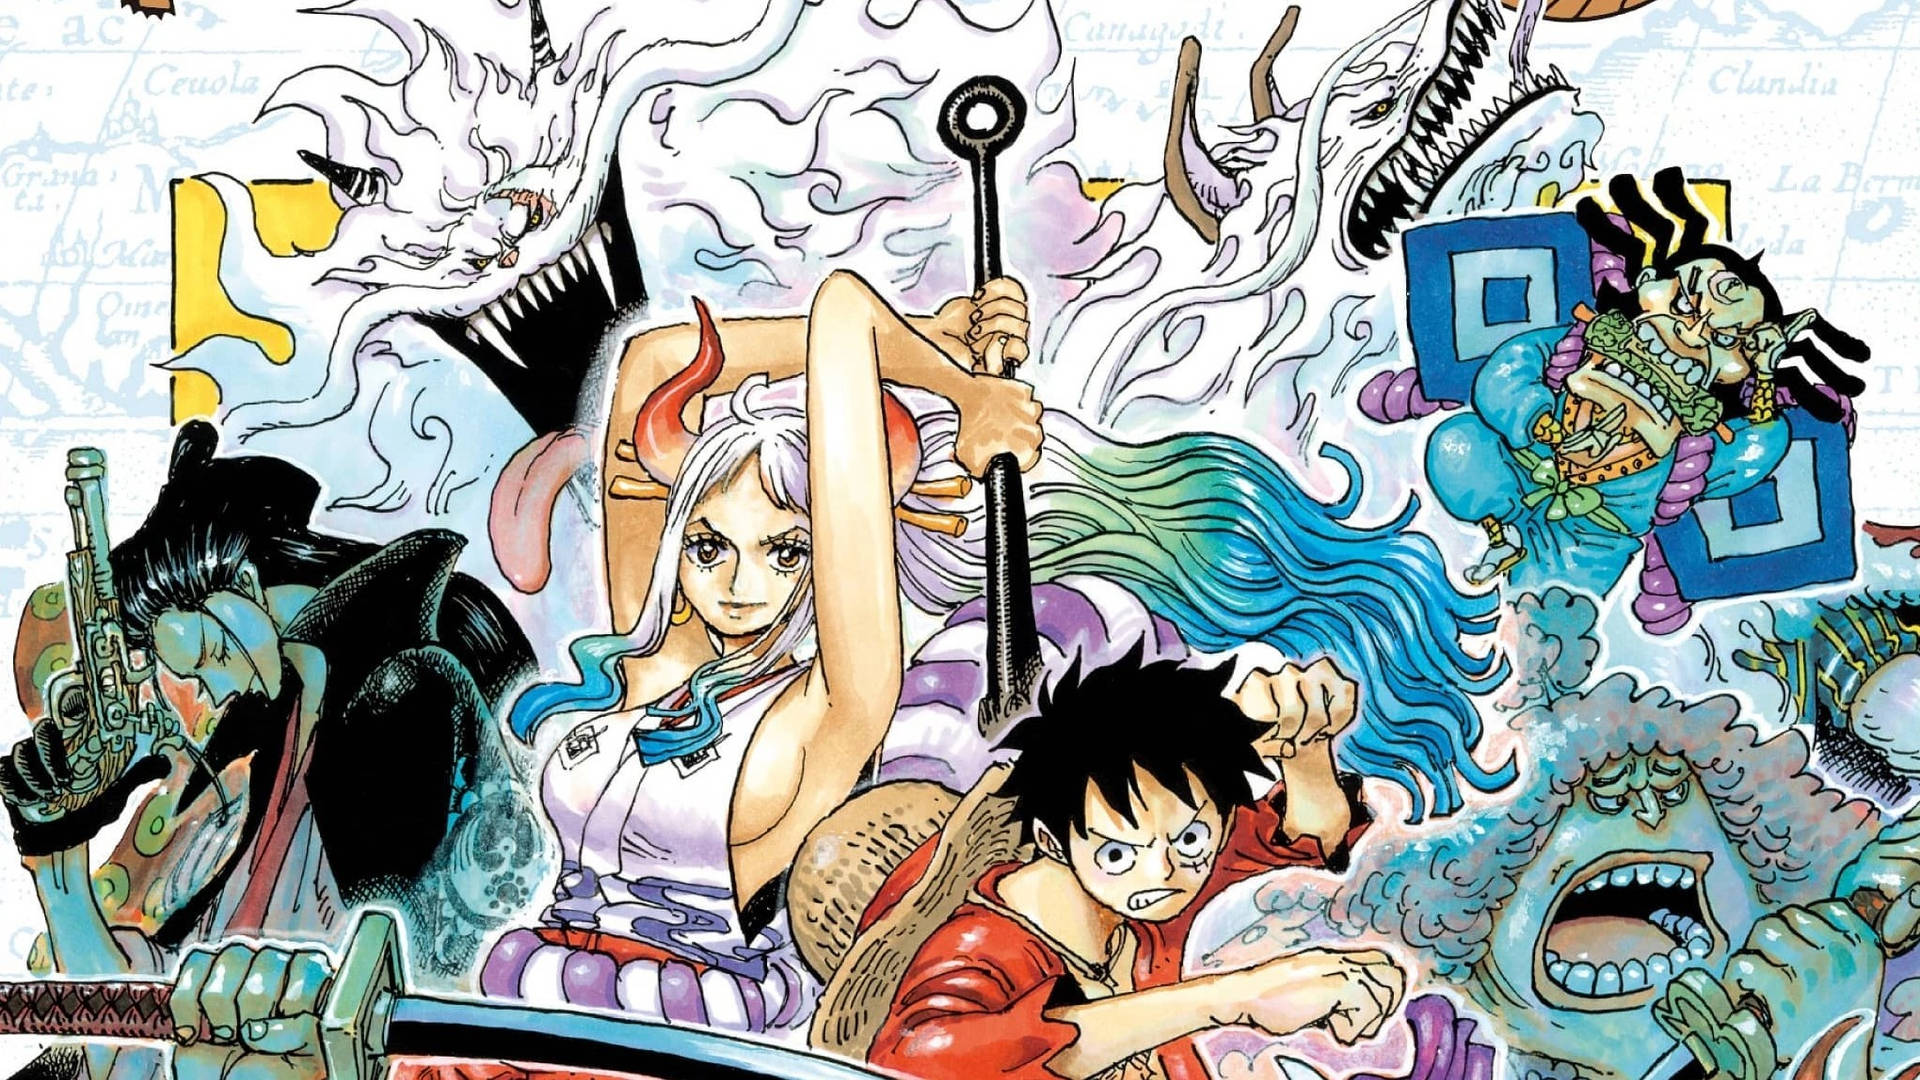 Personagensde One Piece Em Wano. Papel de Parede